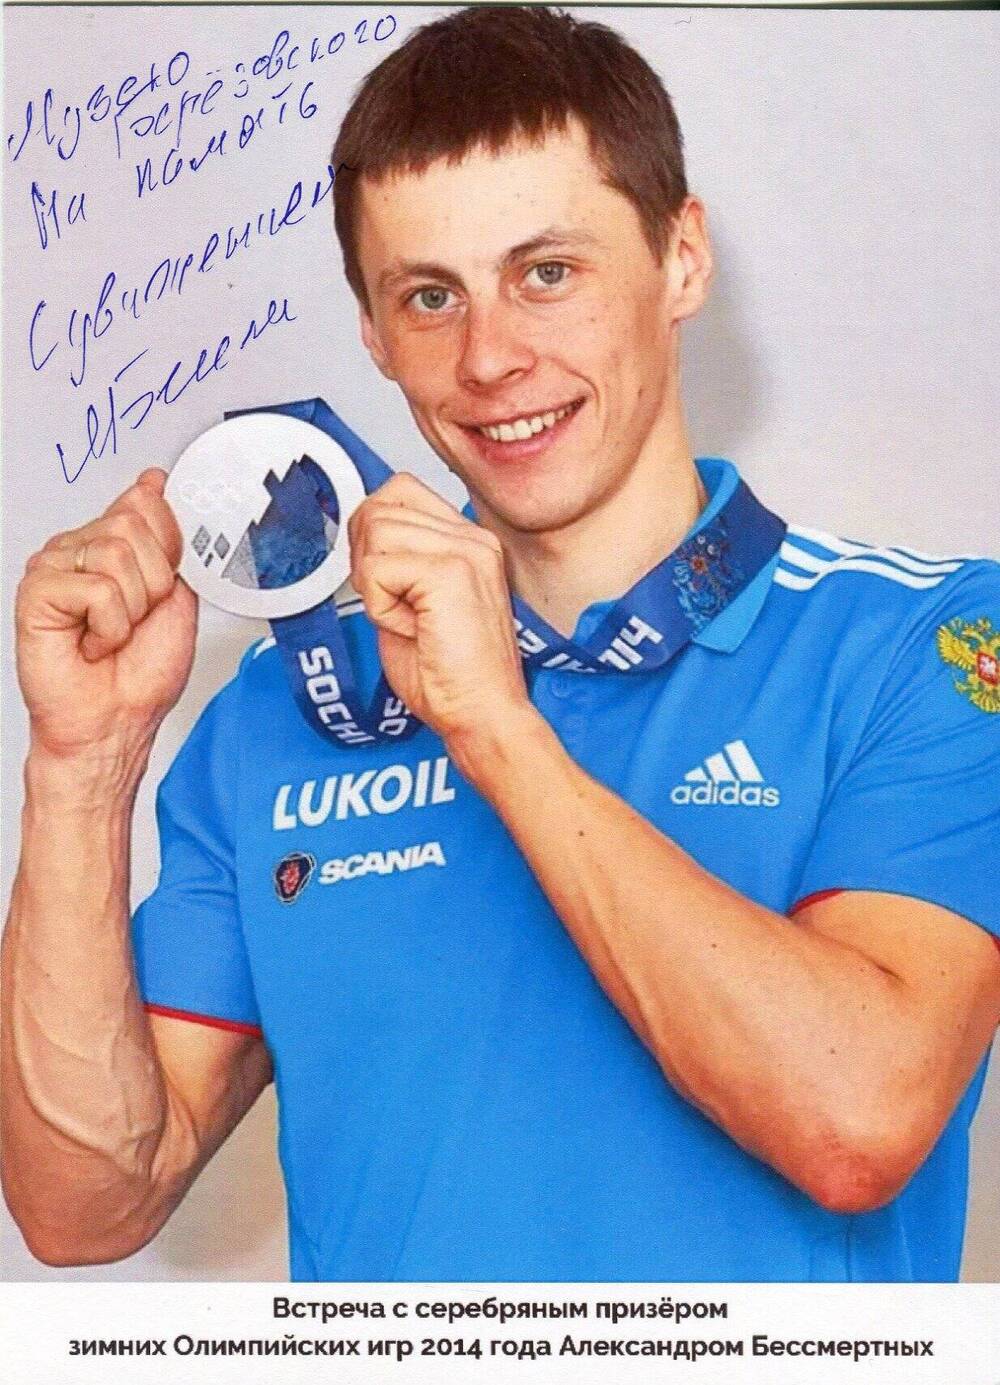 Фотография с автографом. Александр Бессмертных - серебряный призер 22-х зимних Олимпийских игр в Сочи 2014 года.